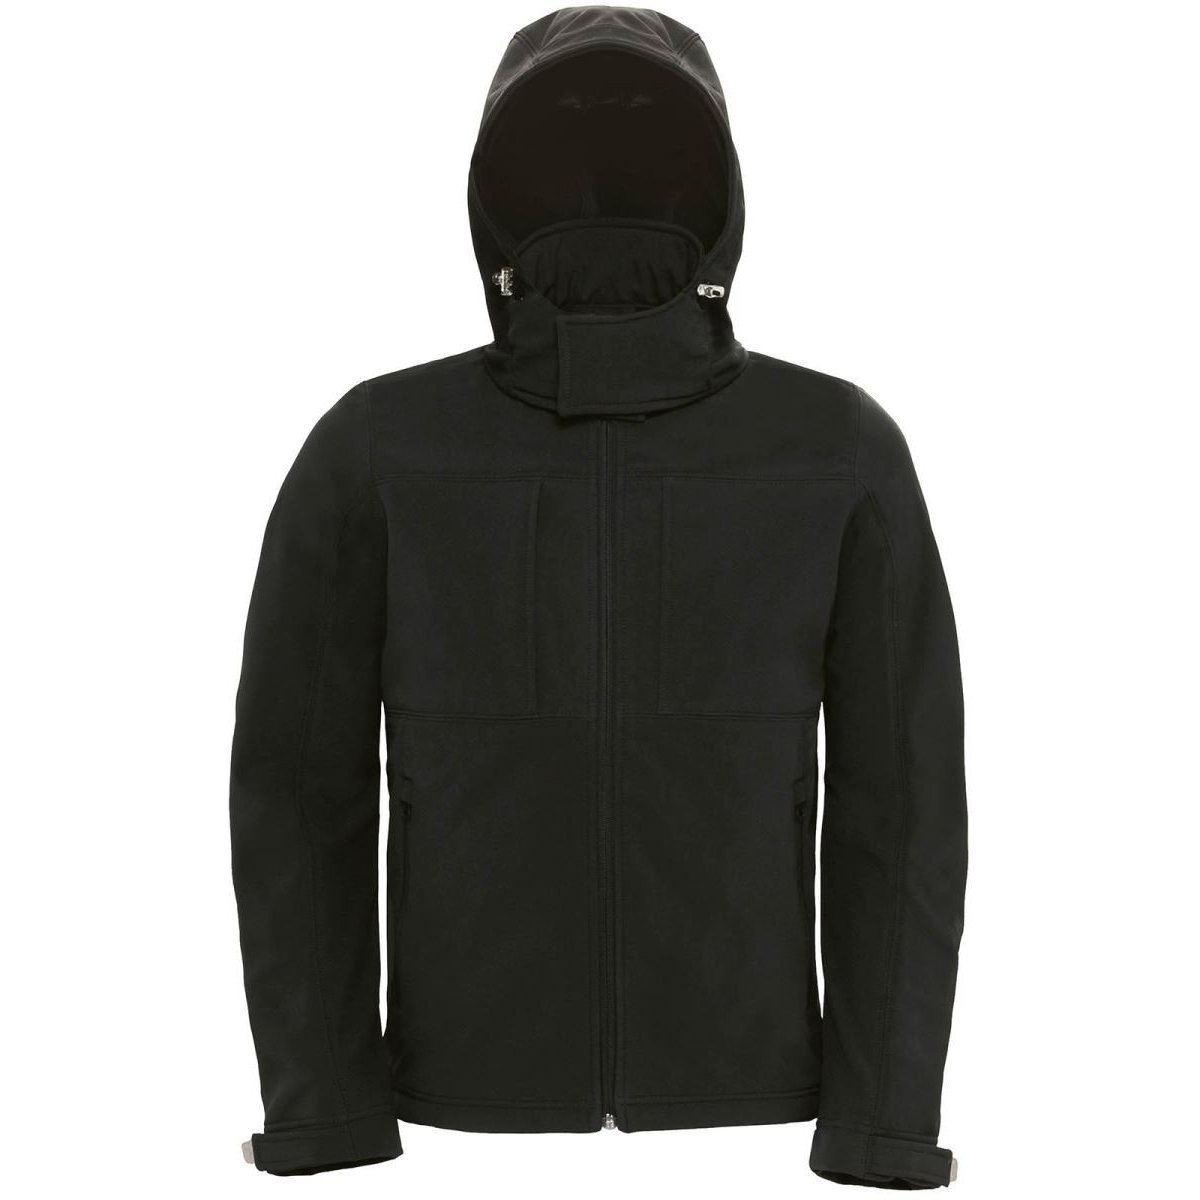 Pánská softshellová bunda s kapucí B&C Hooded Softshell - černá, L